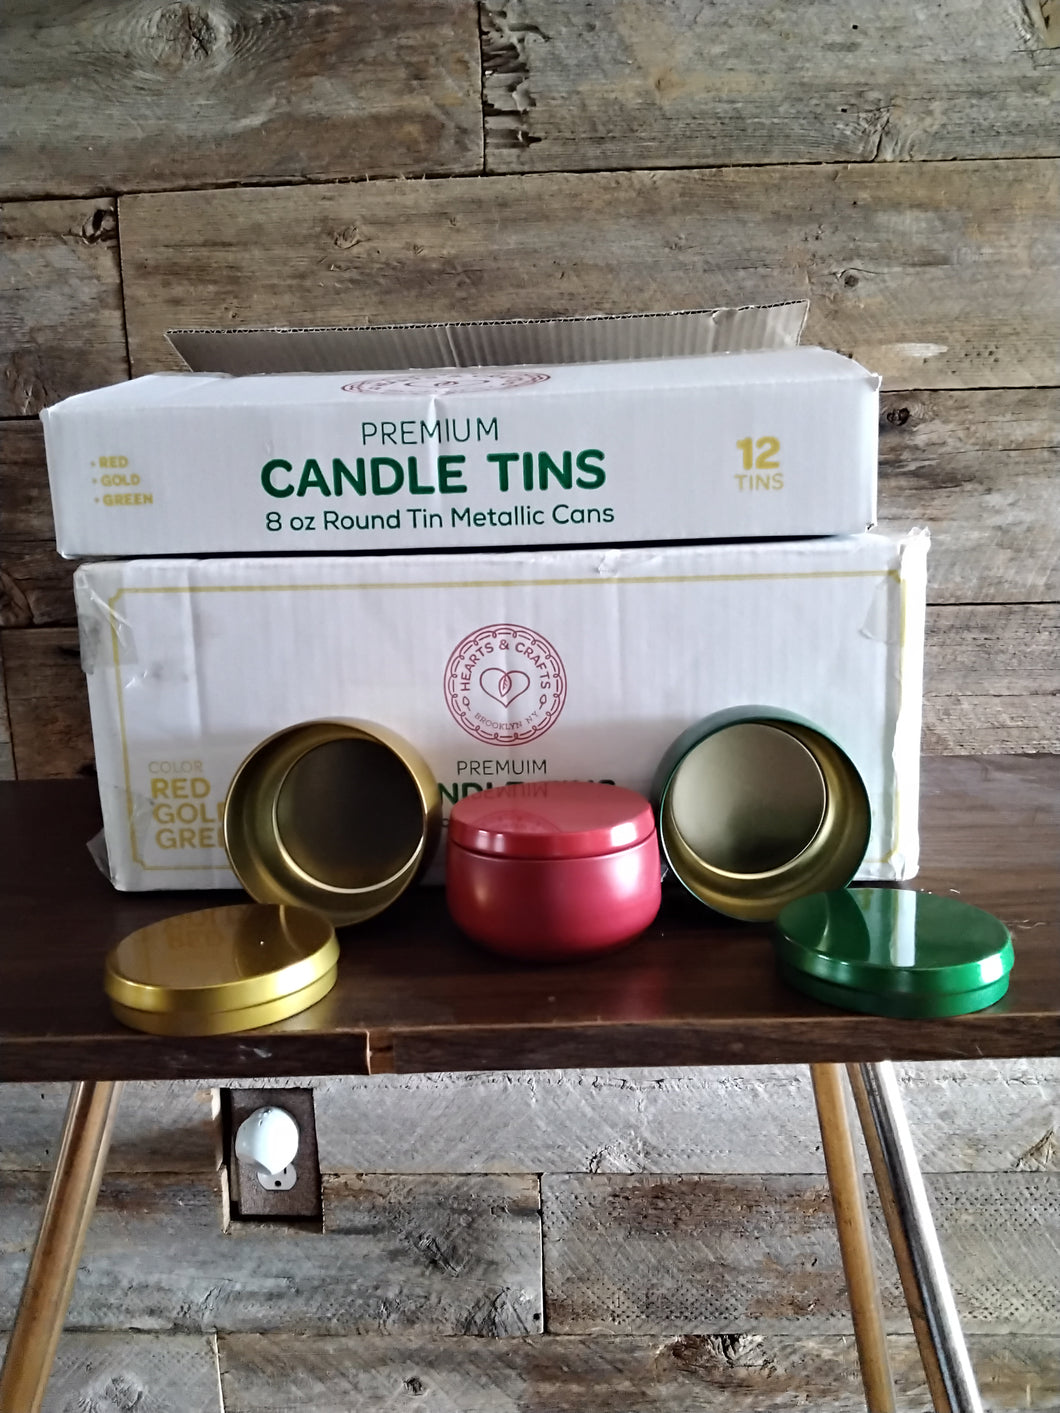 Premium Candle Tins